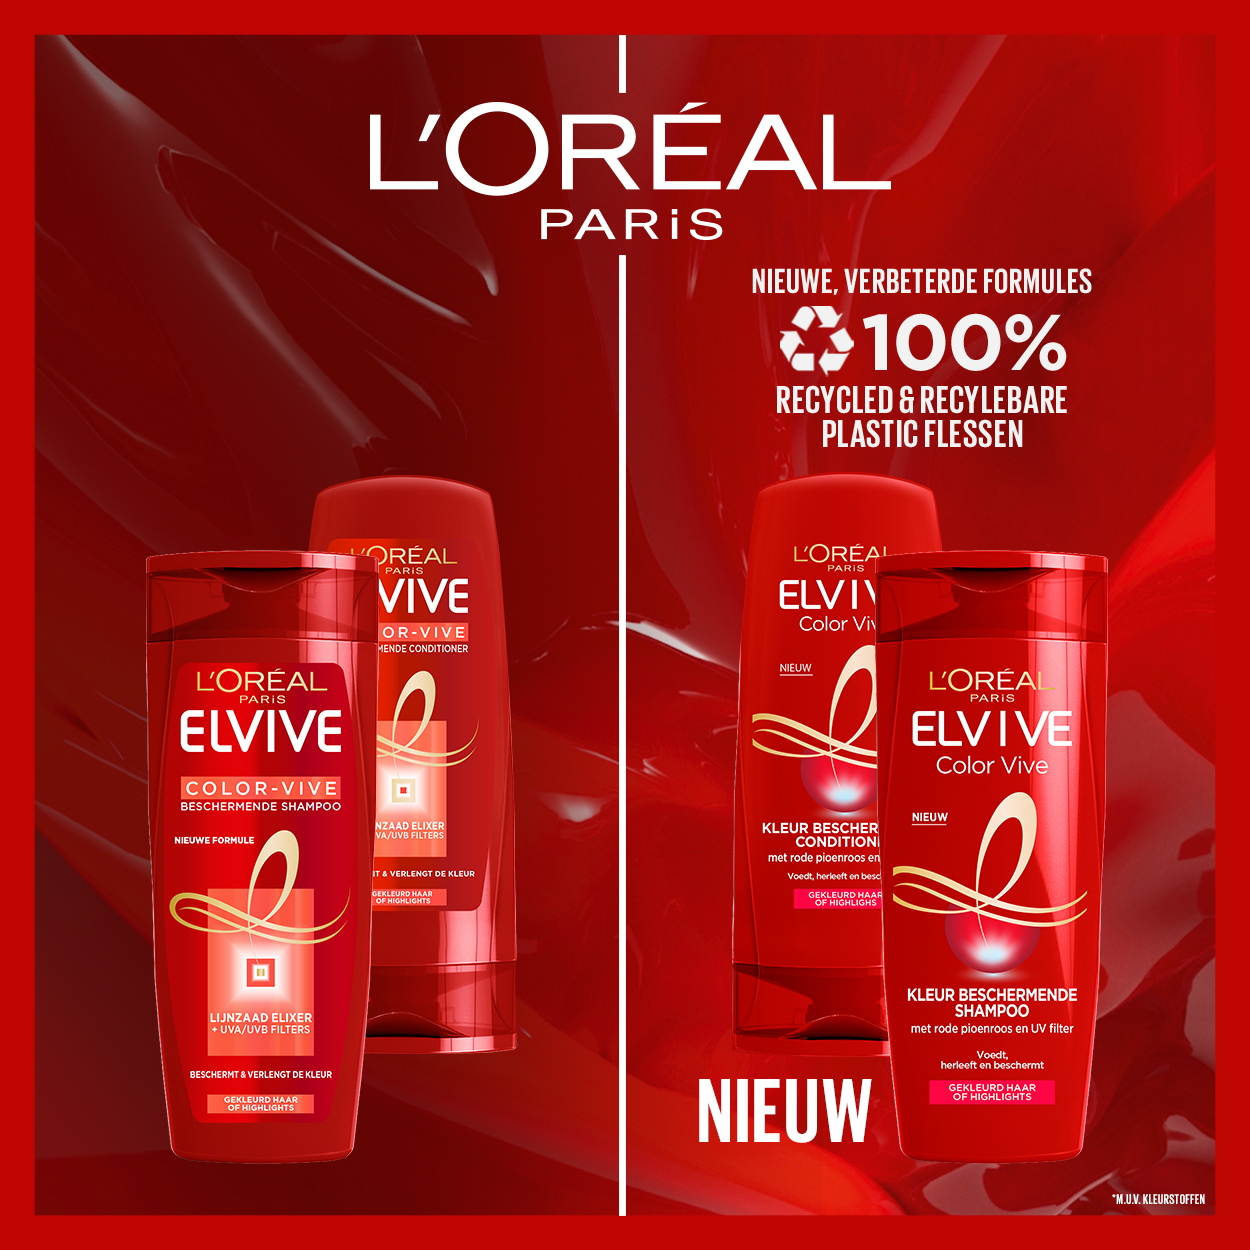 Elvive Color Vive Gekleurd Haar - 250ml - Shampoo